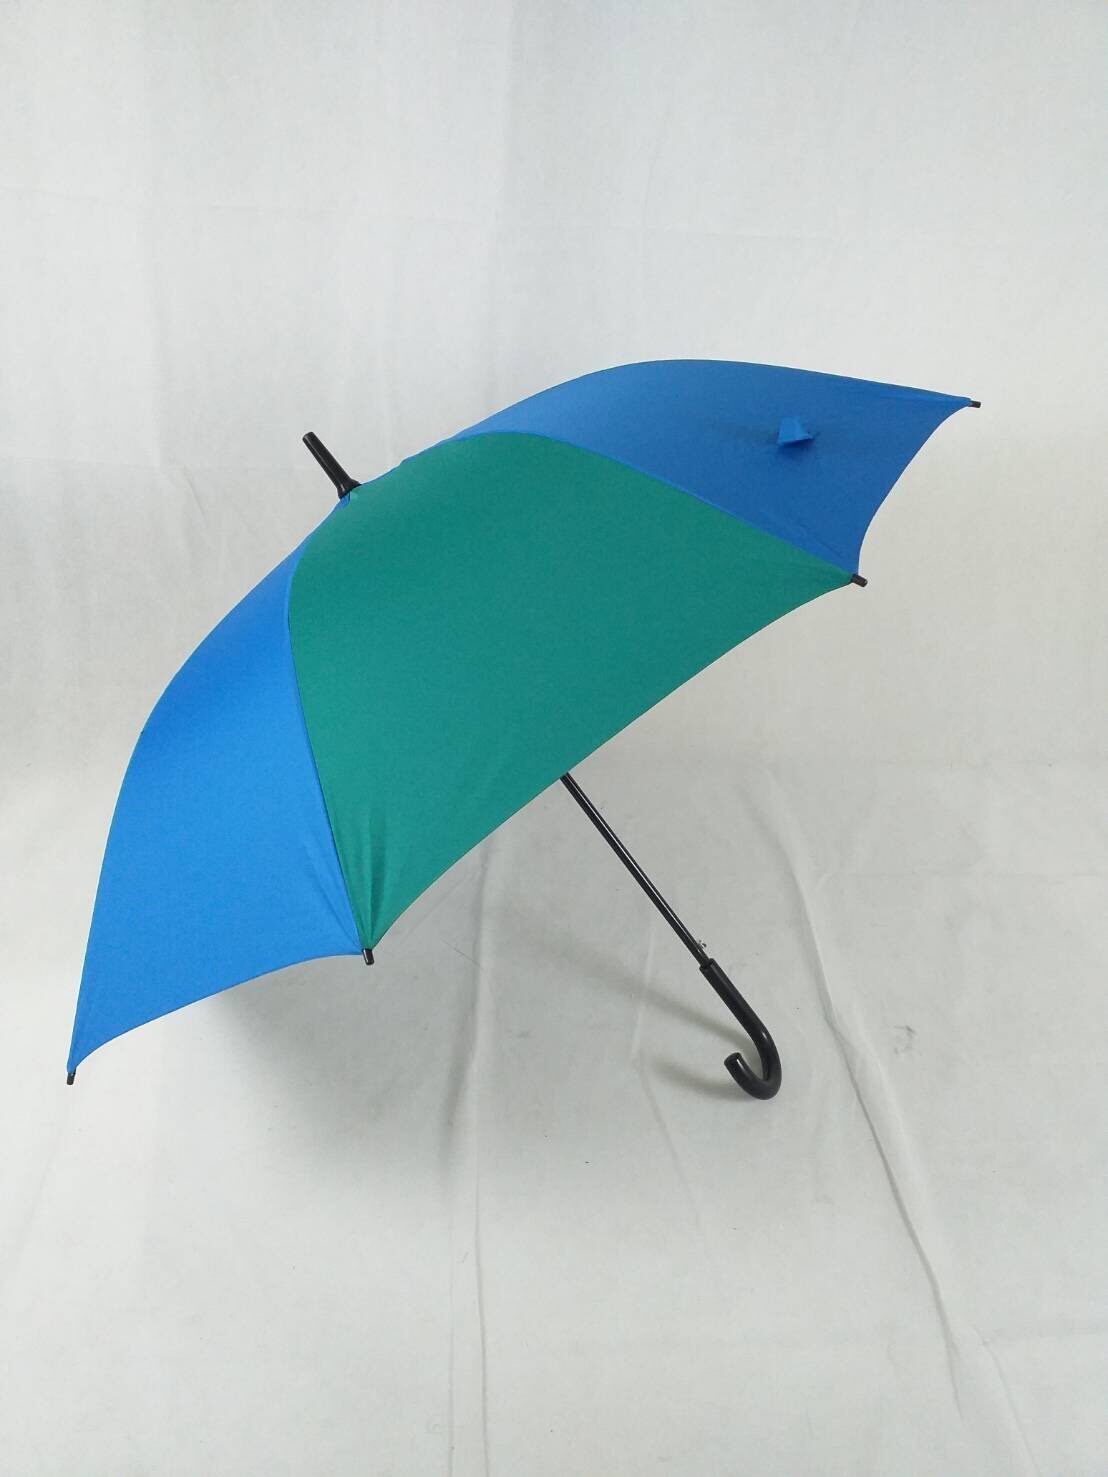 ร่มกอล์ฟ ร่มคันใหญ่ เปิดออโต้ รหัส 28142-7 แกนเหล็กแข็งแรง ผ้าทูโทน ด้ามงอ กันUV ร่มกันแดด กันน้ำ ผลิตในไทย golf umbrella